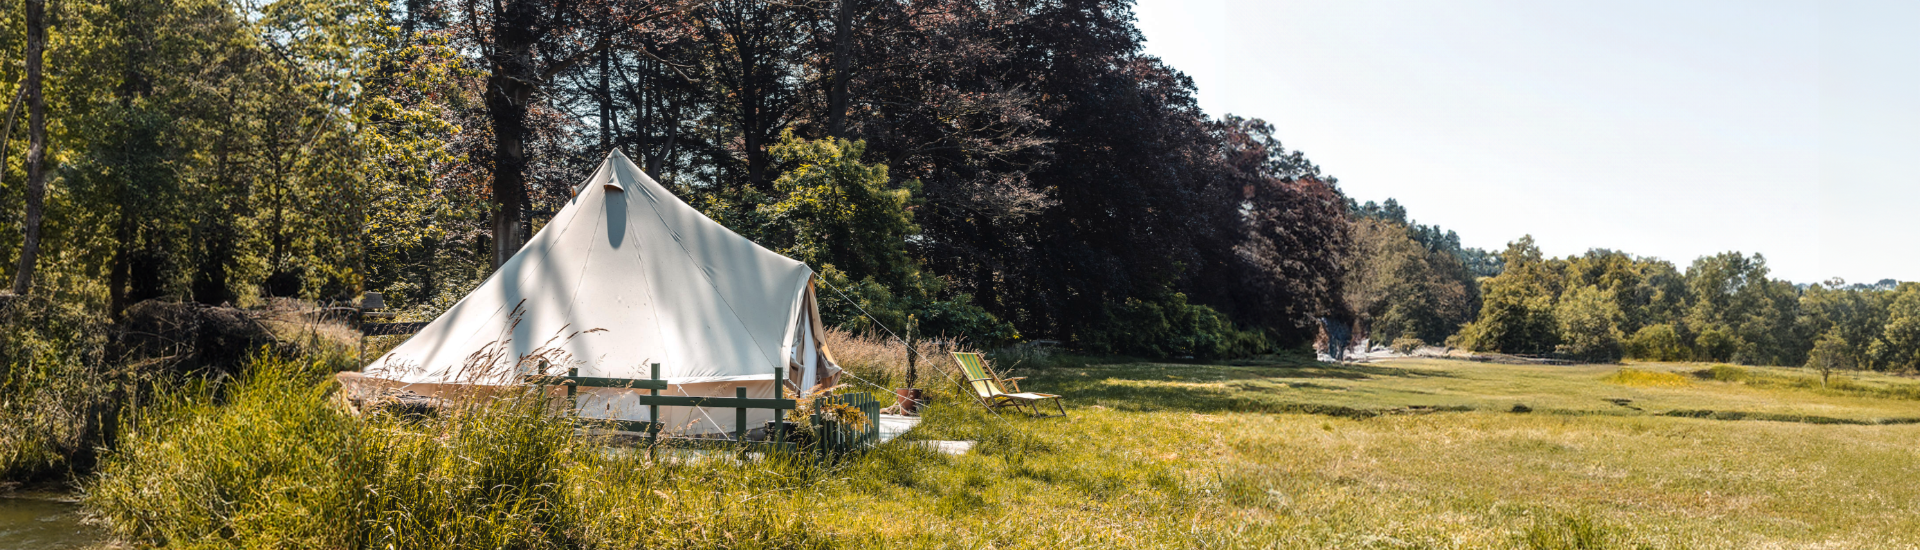 Entdecken Sie das originale Sibley-Zelt